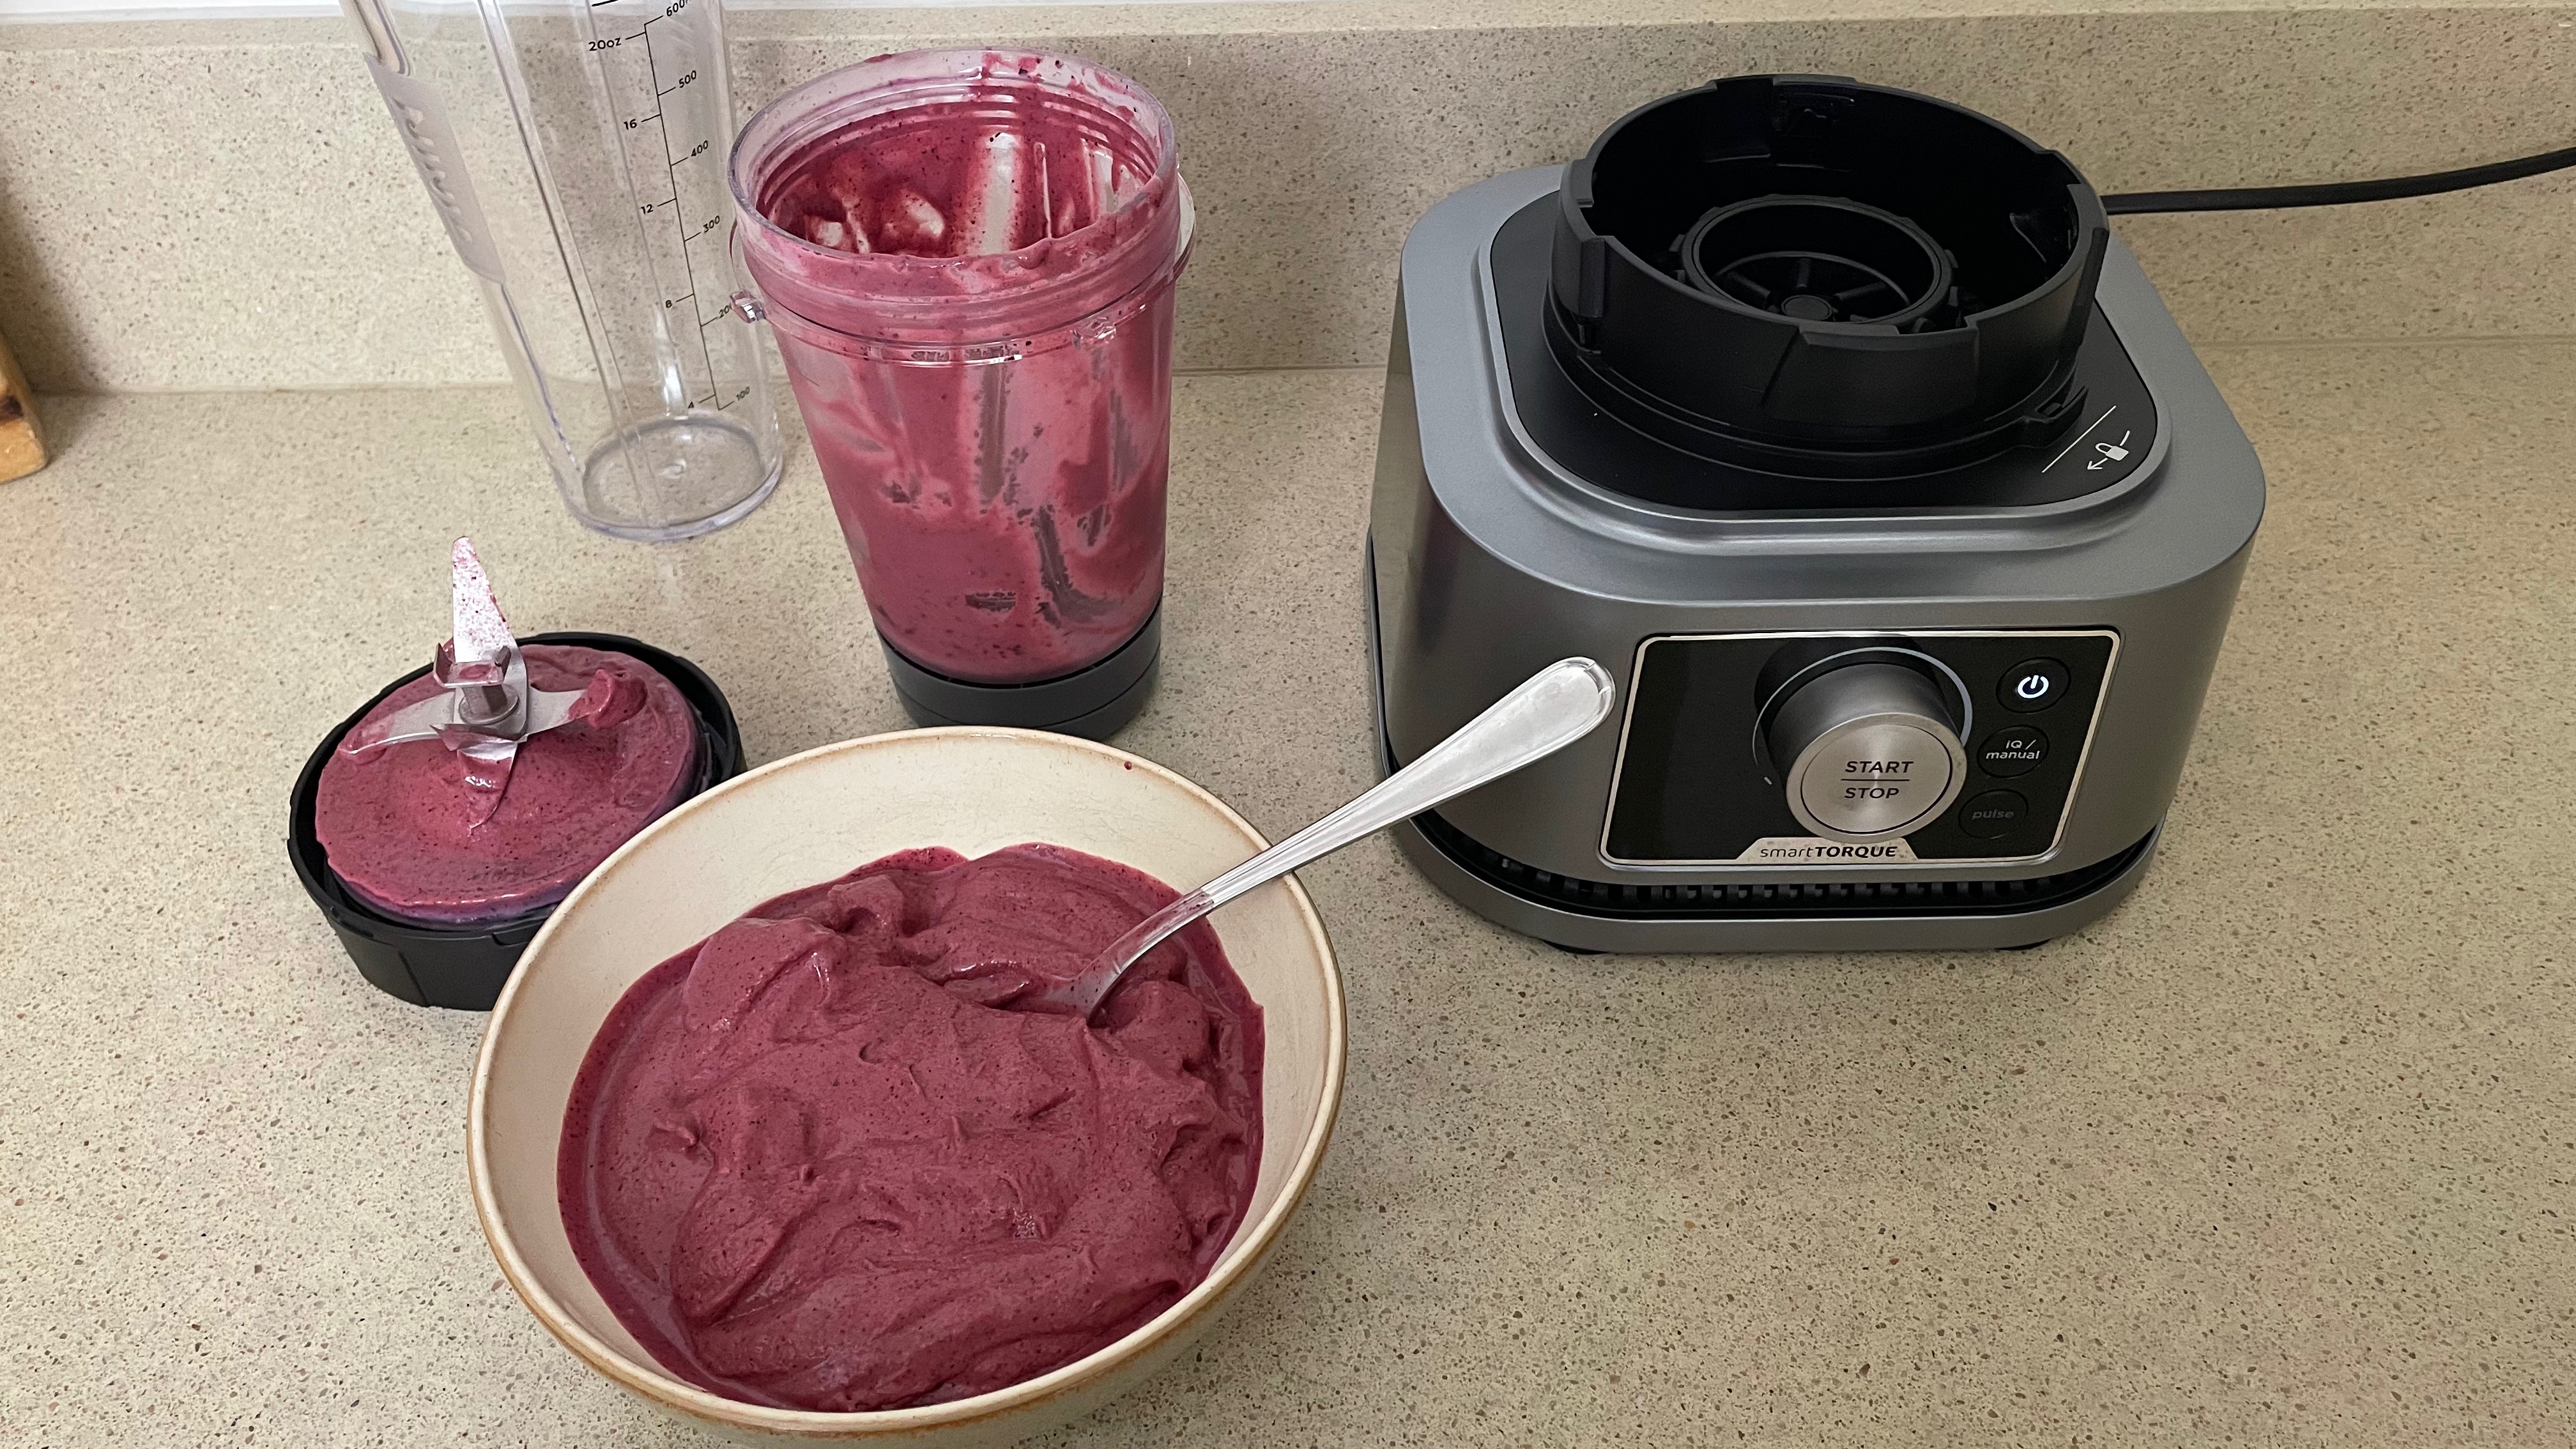 Sistem Blender & Prosesor Ninja Foodi Power menampilkan bahan berry dan yogurt yang dicampur menjadi smoothie